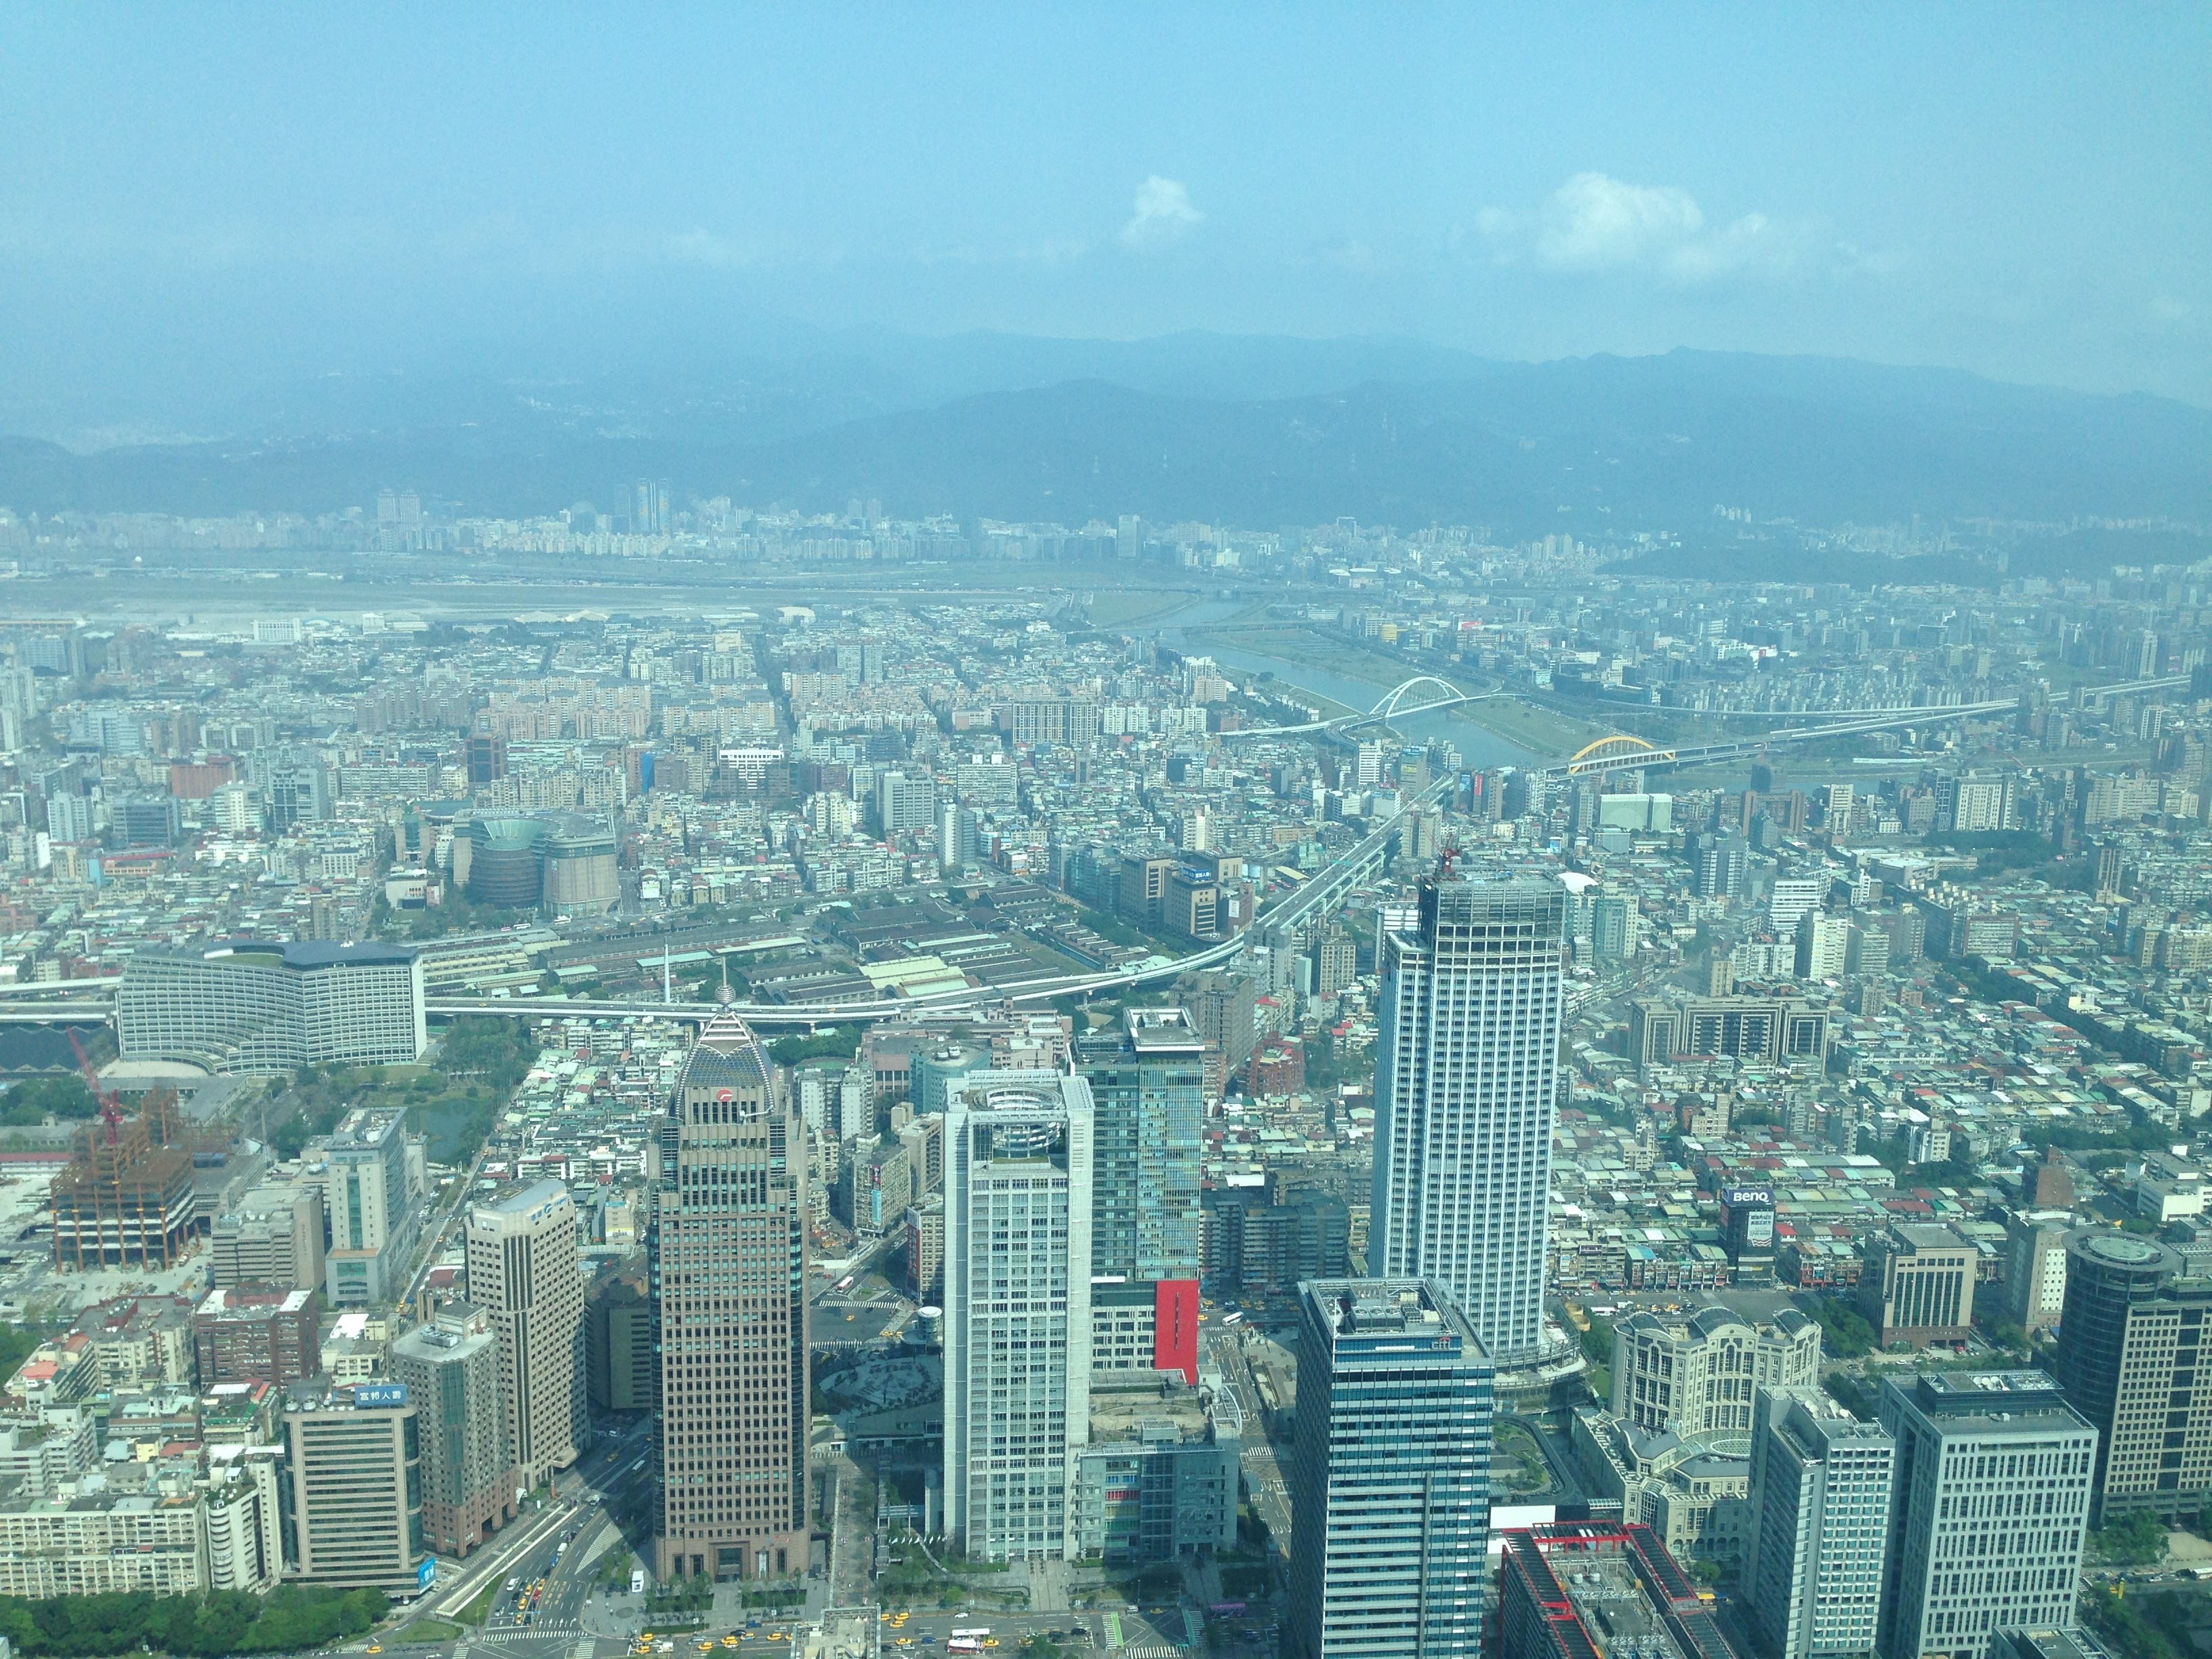 View of Taipei, Taiwan from the Taipei 101 building